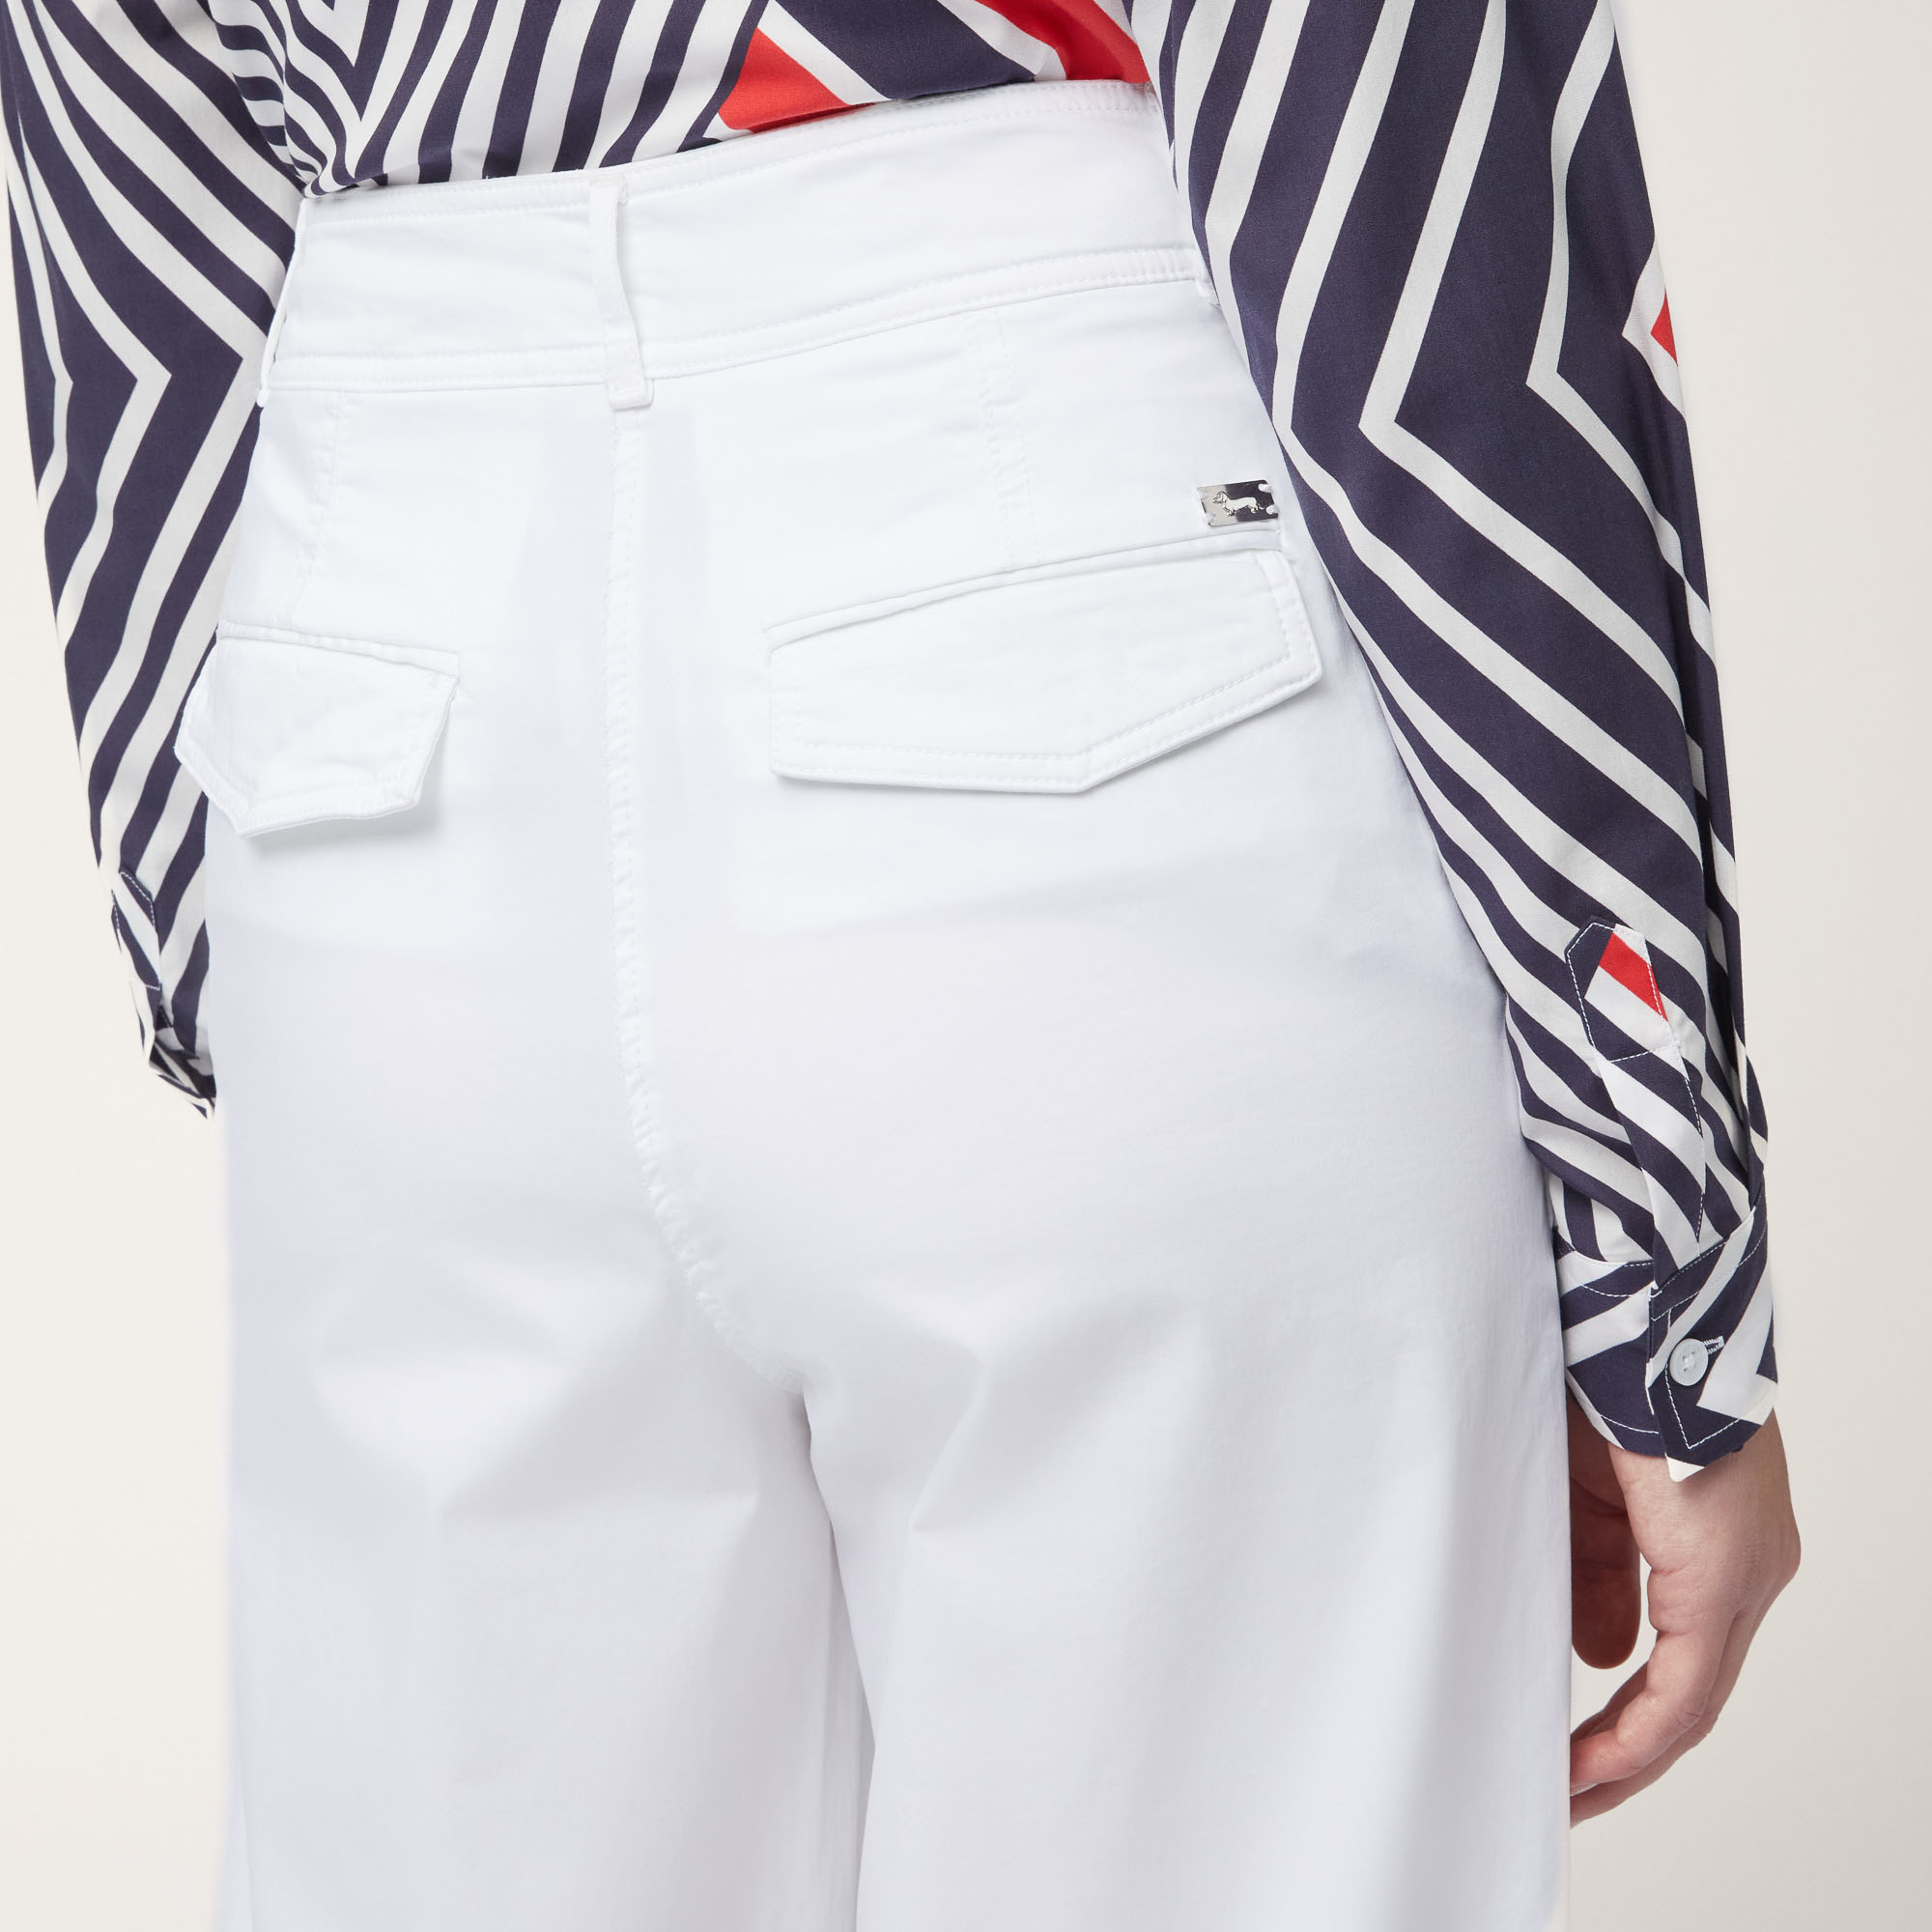 Pantaloni Gamba Larga In Raso, Bianco, large image number 2